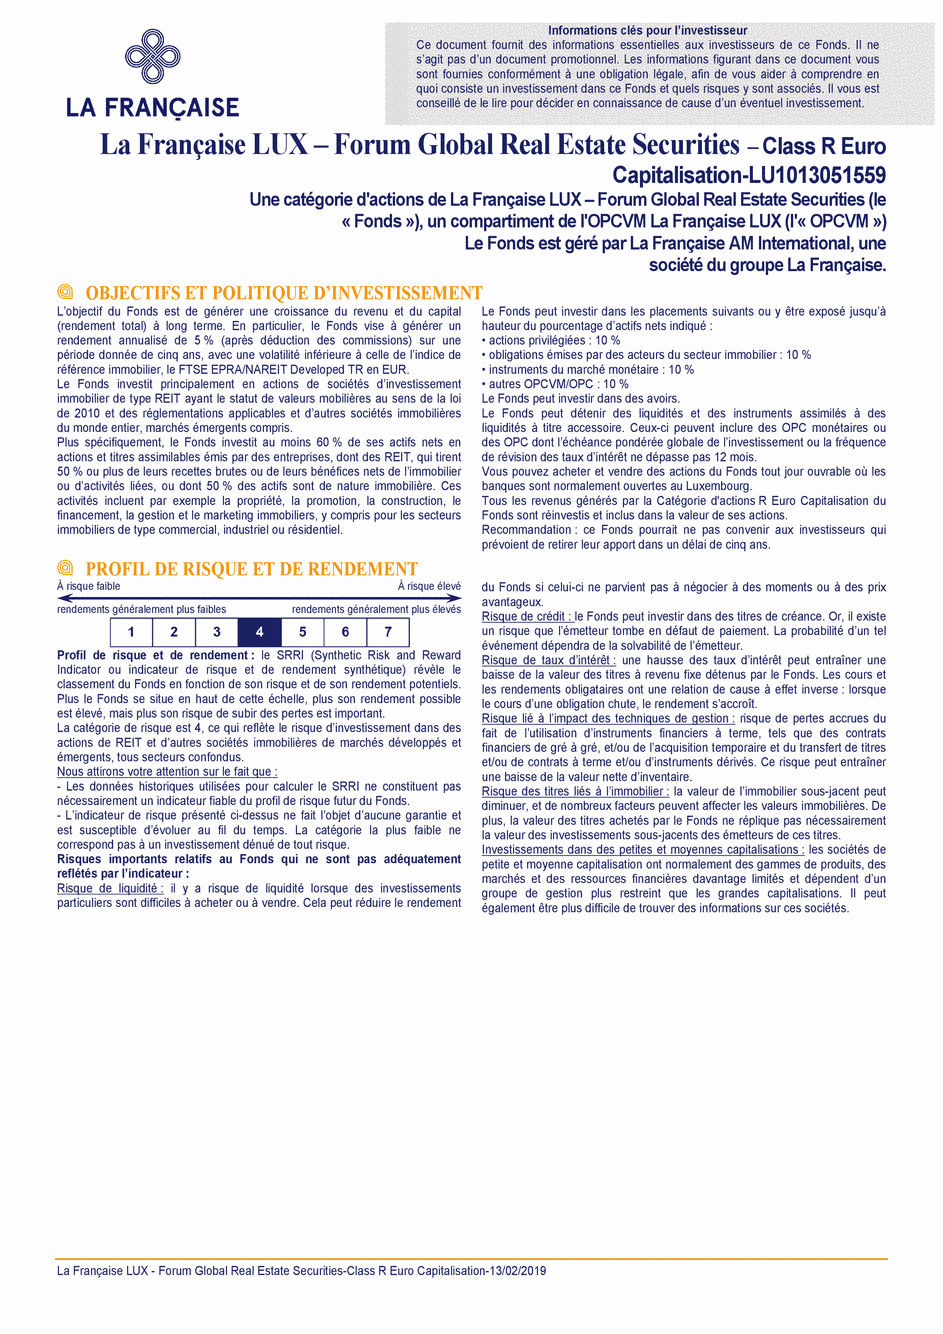 DICI La Française LUX - Forum Global Real Estate Securities - R (C) EUR - 13/02/2019 - Français